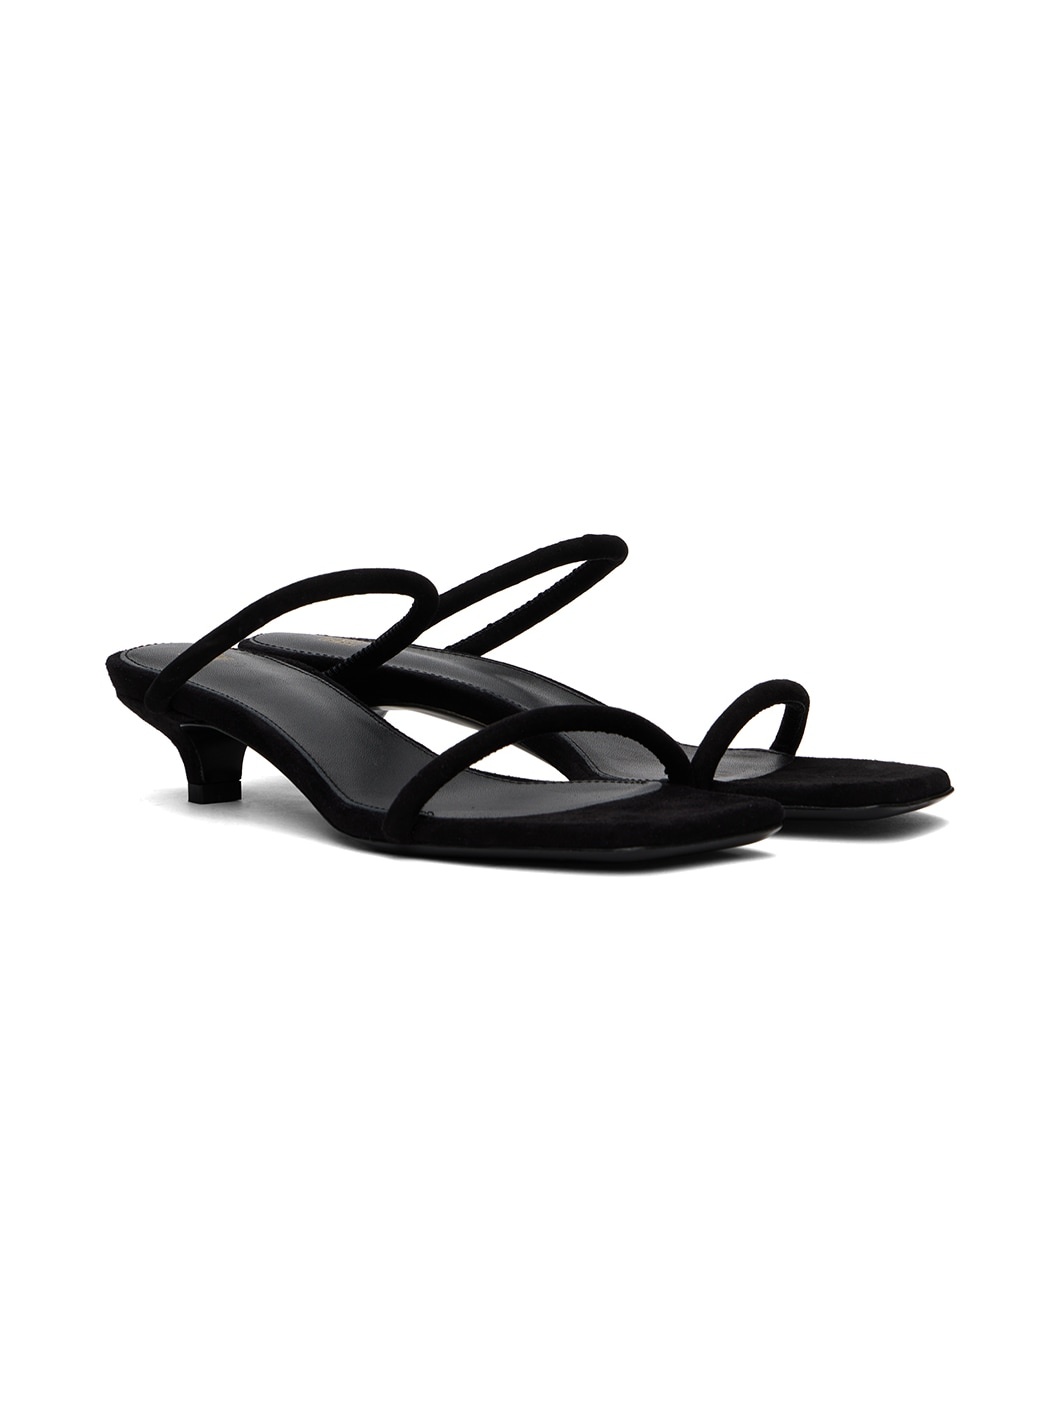 Black 'The Minimalist' Heeled Sandals - 4